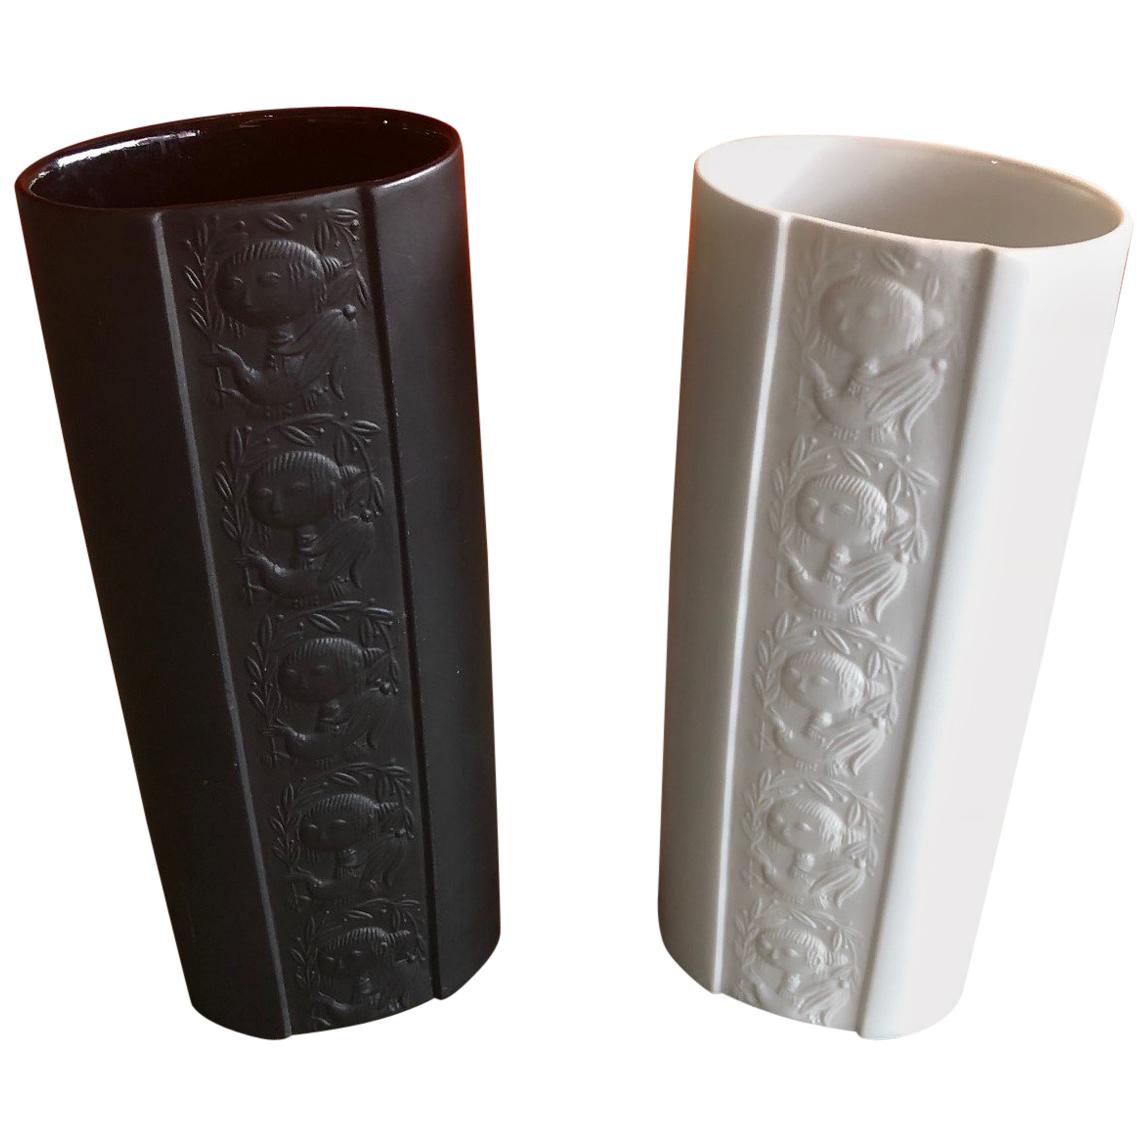 Pair of Studio Line Vases by Bjorn Wiinblad for Rosenthal